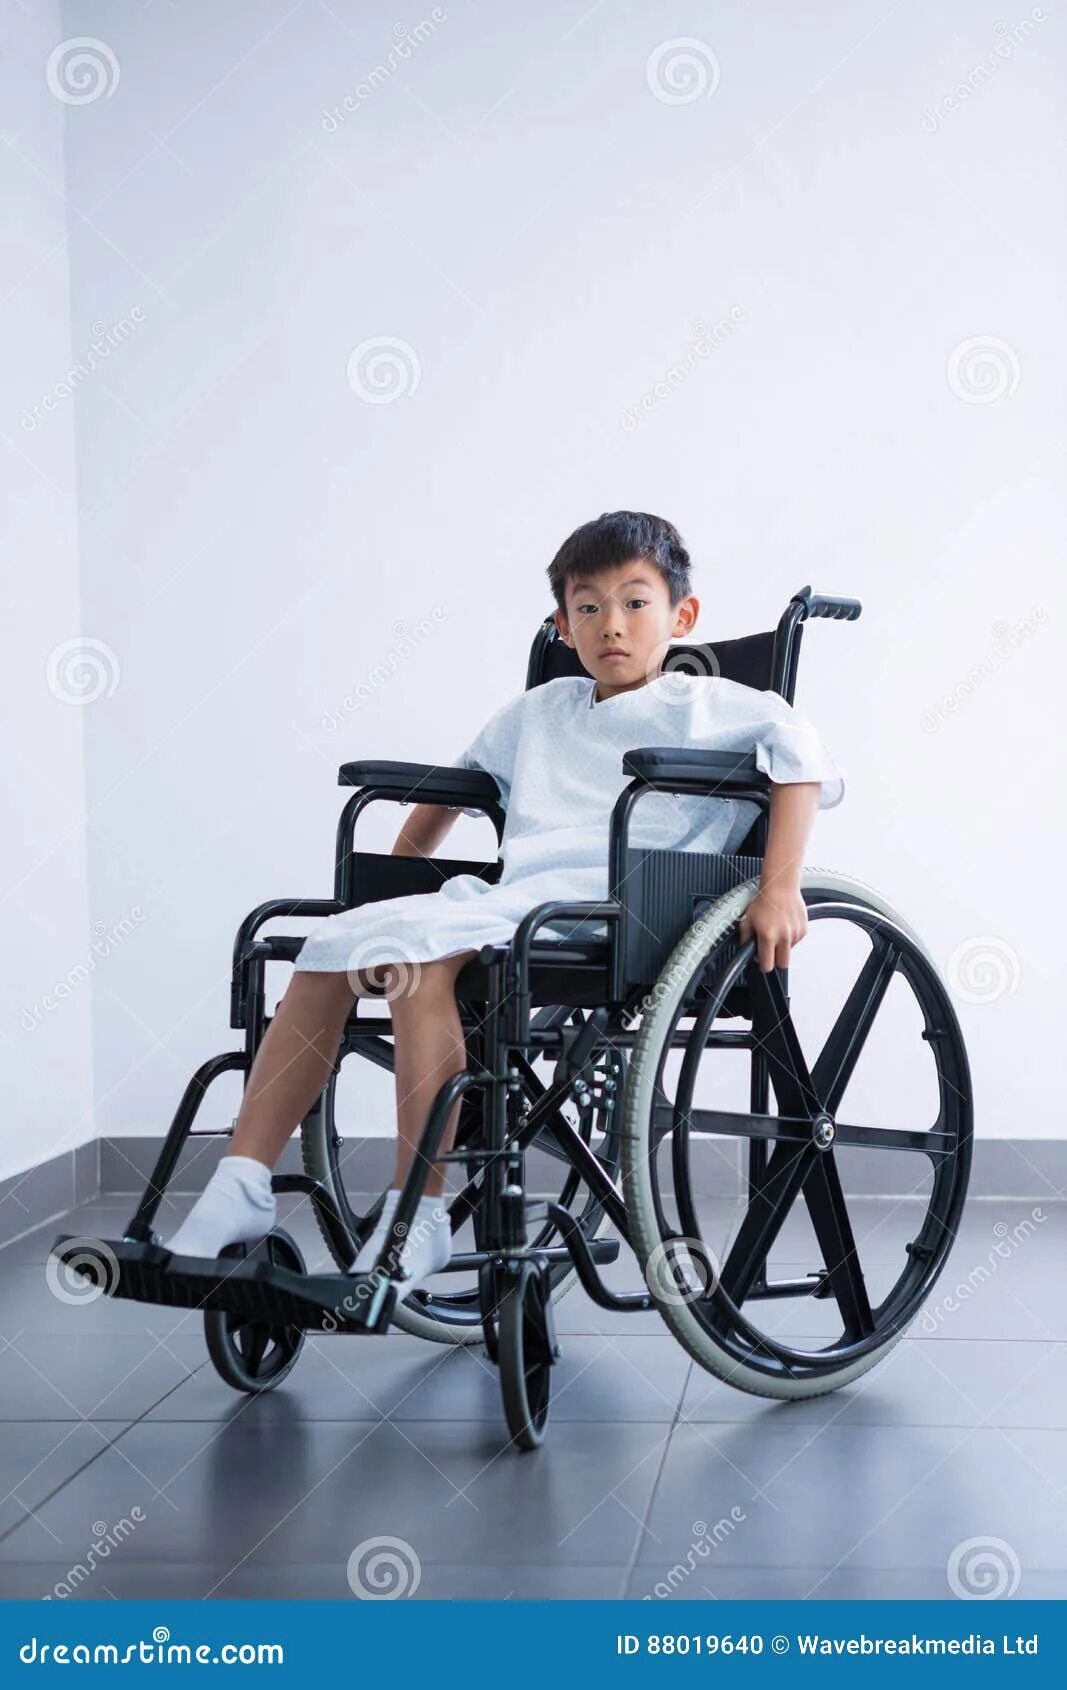 Неработающий инвалид с детства. Ребенок в инвалидной коляске. Мальчик инвалид. Коляска для детей инвалидов. Подросток в инвалидной коляске.